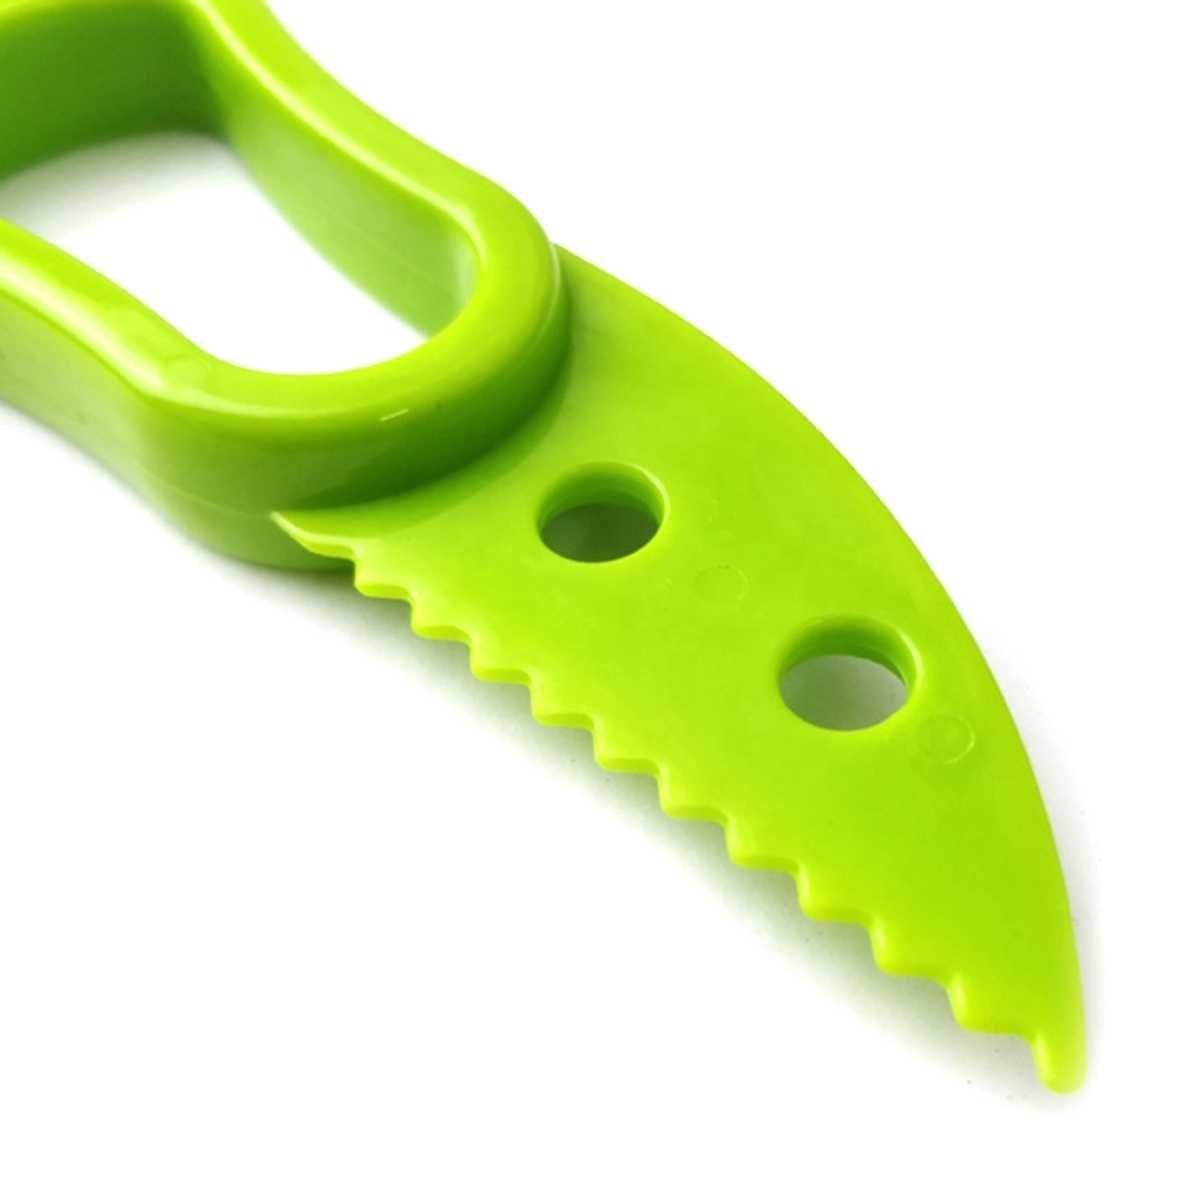 Kompaktowy nóż i drylownica do awokado z solidnego tworzywa sztucznego